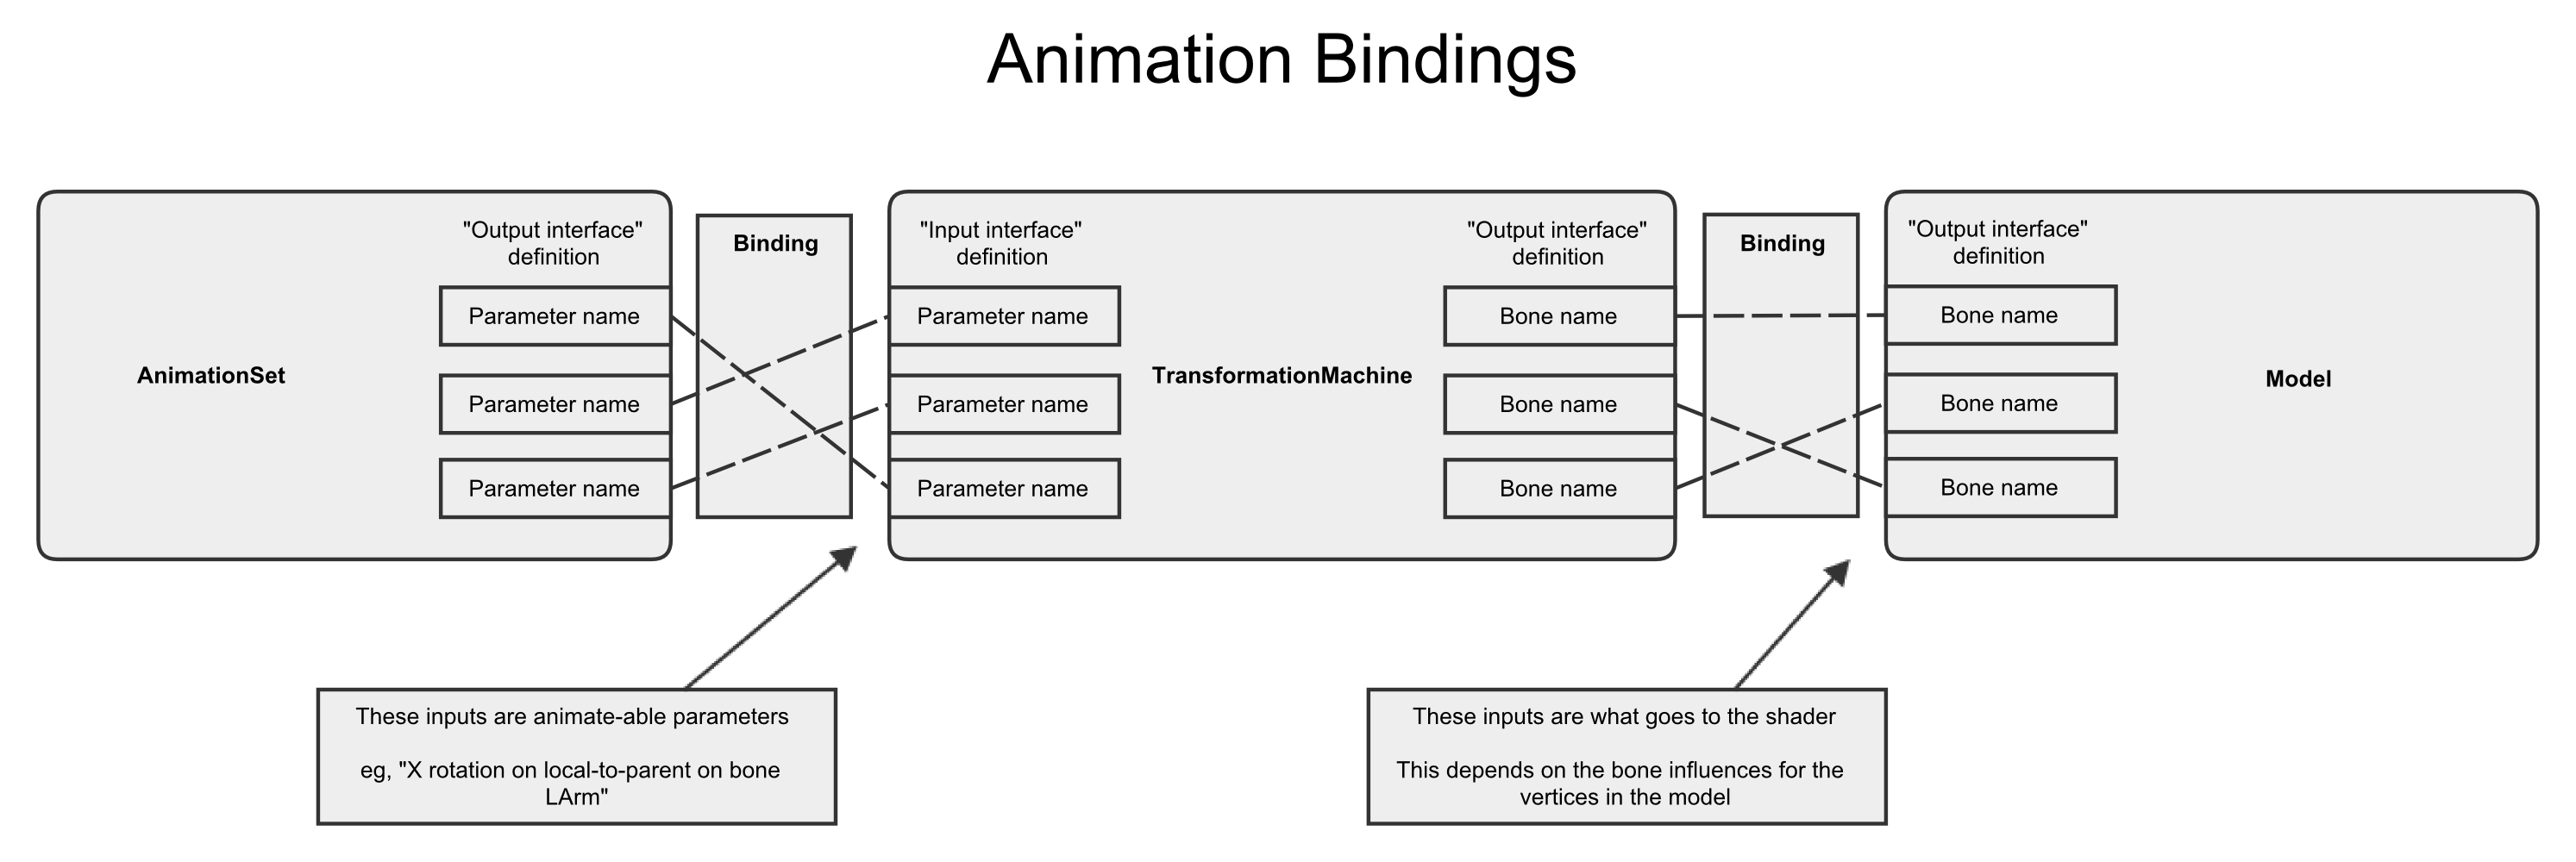 AnimationBindings